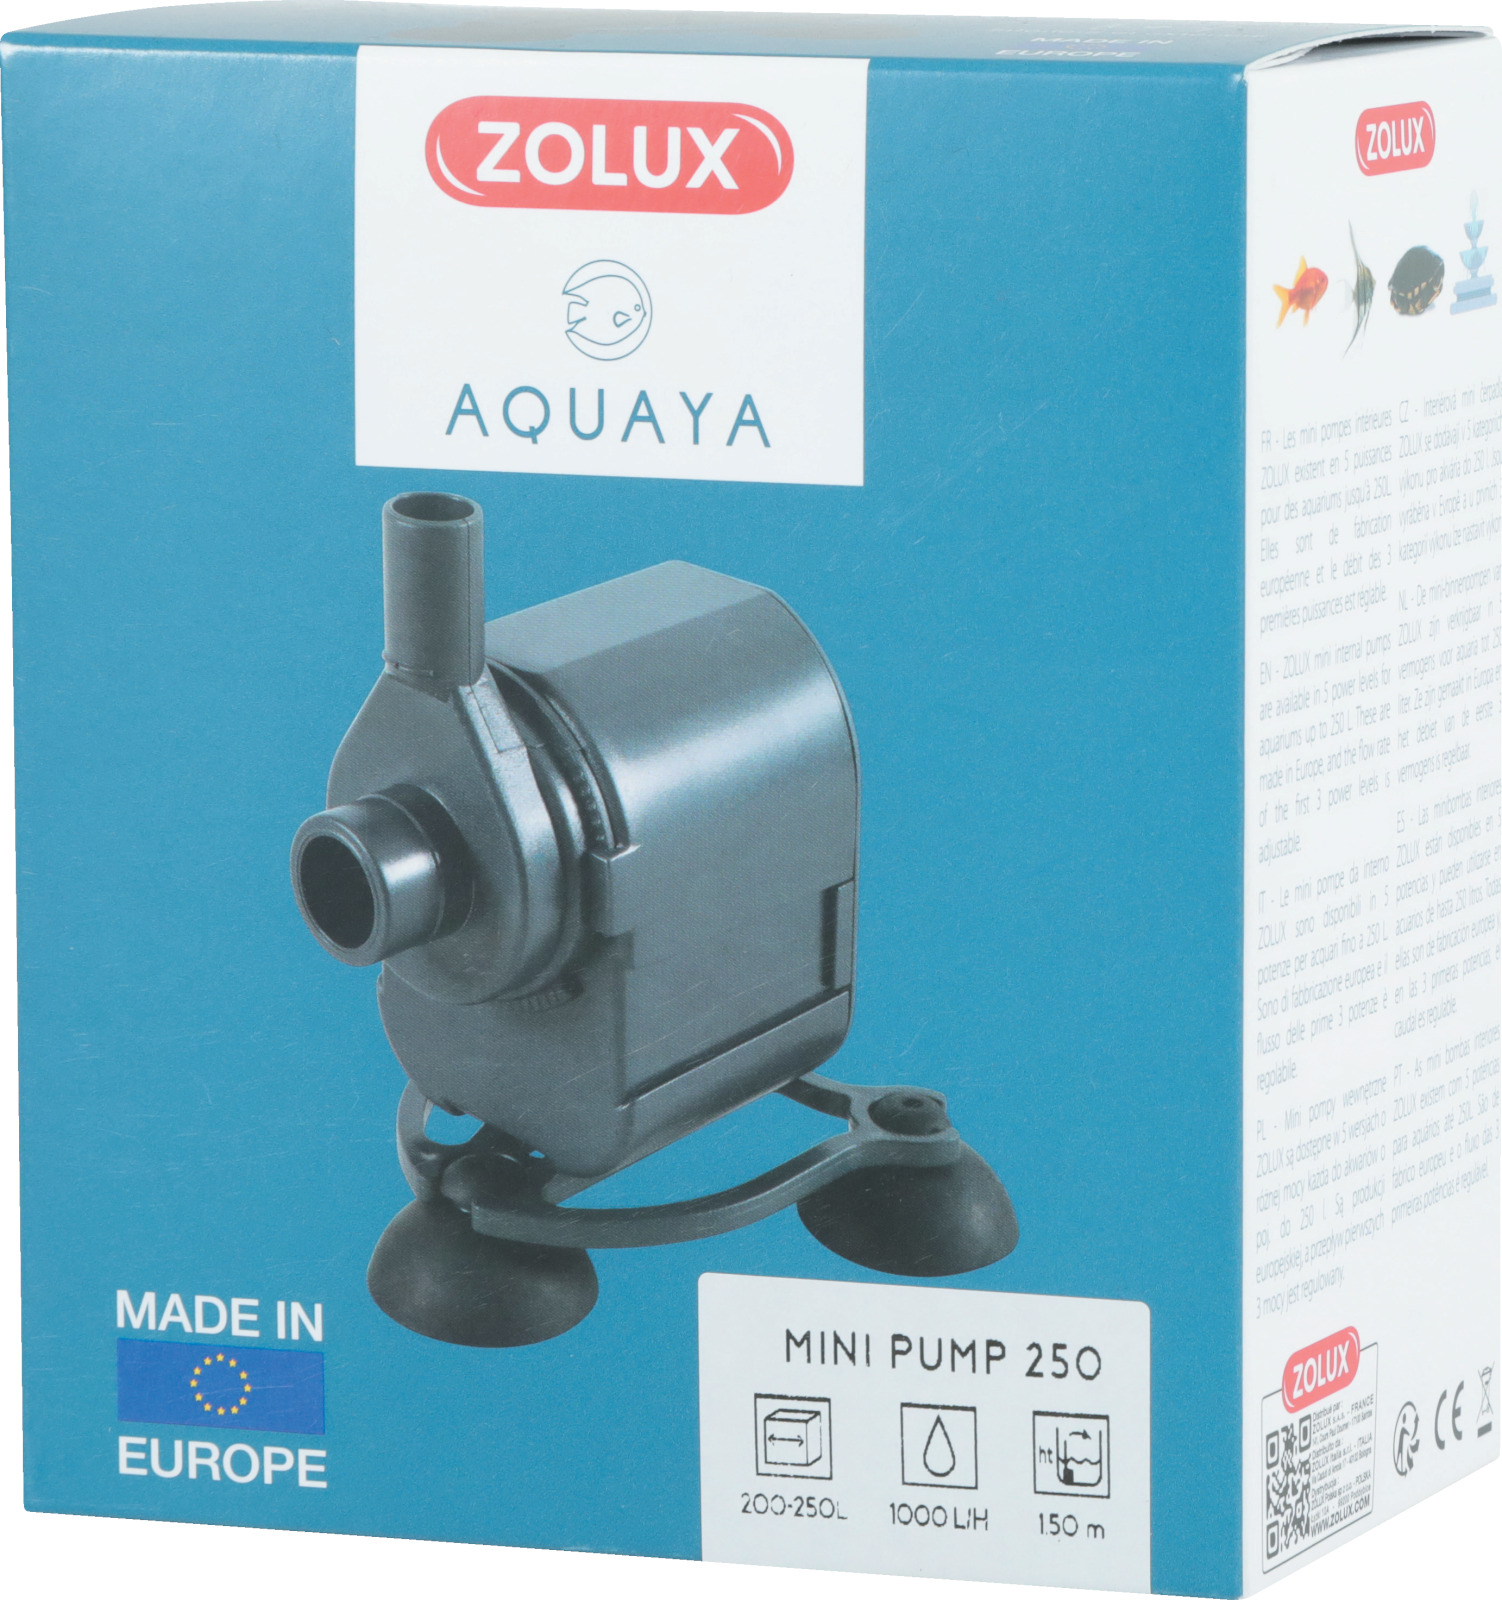 ZOLUX Aquaya Mini Pump 250 pompe avec débit fixe de 1000 L/h pour aquarium de 200 à 250 L